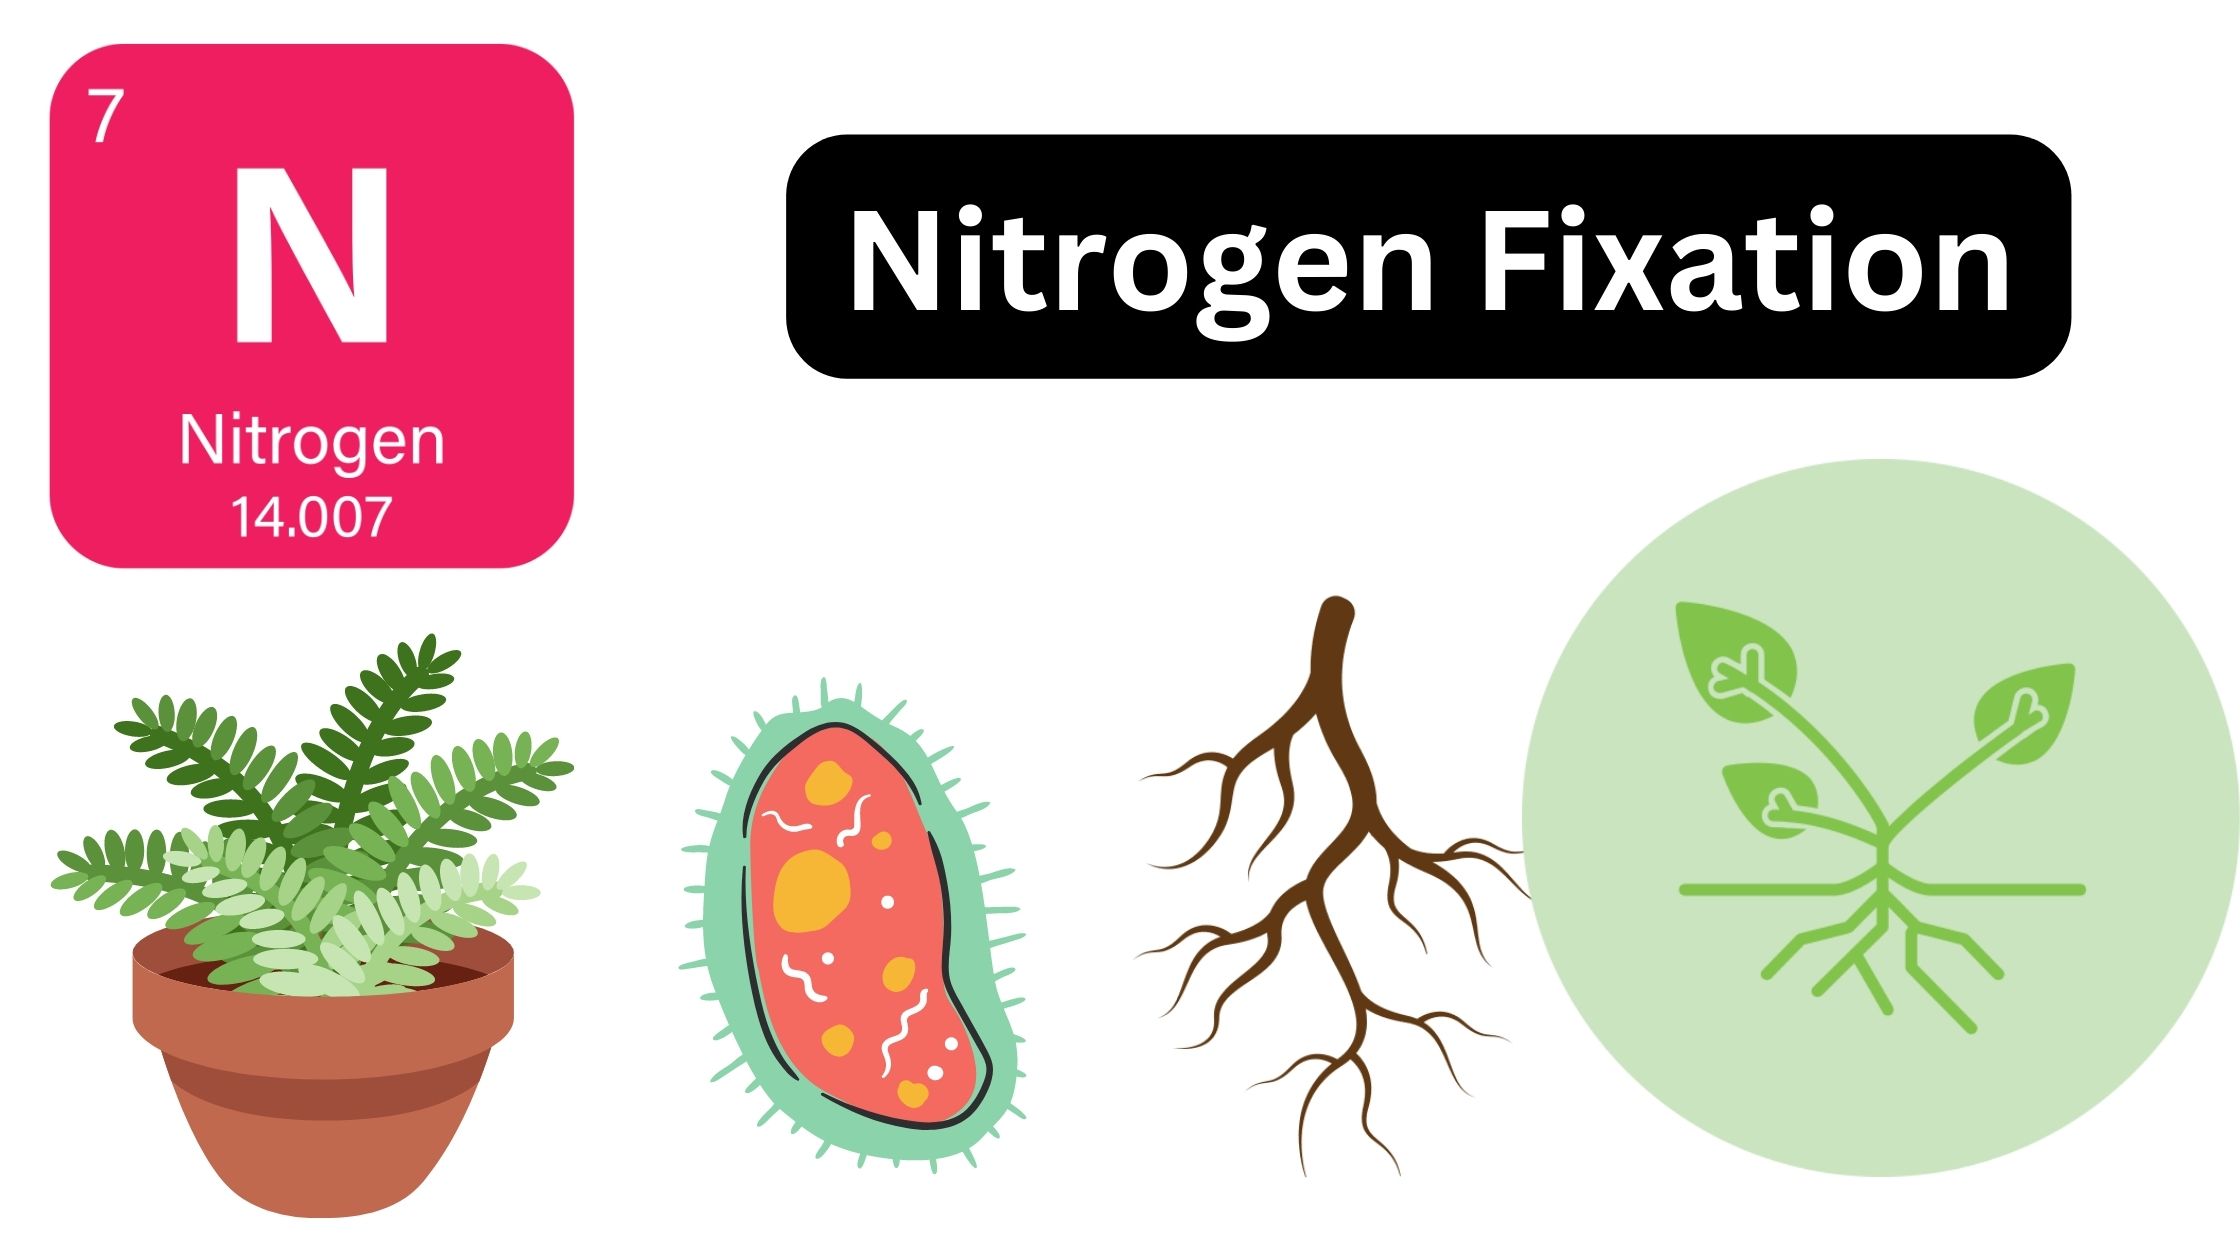 Nitrogen Fixation - Definition, Importance, Processes